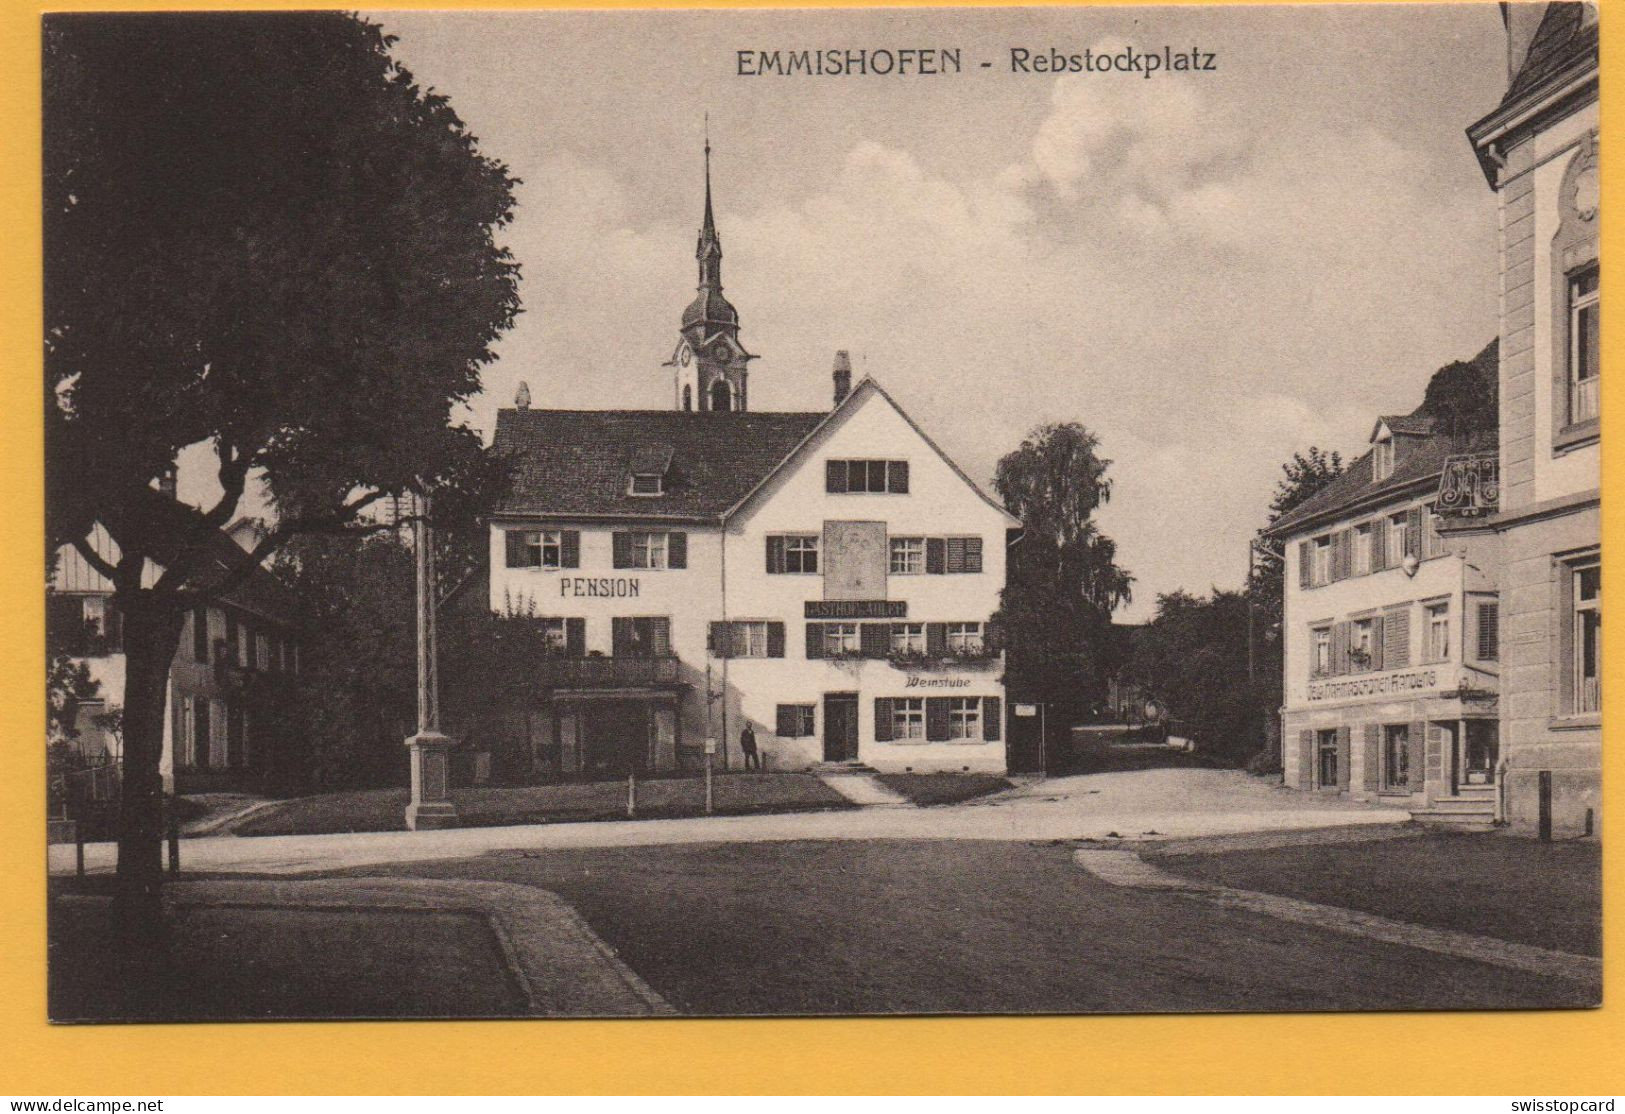 EMMISHOFEN Rebstockplatz, Pension Gasthof Adler, Weinstube - Kreuzlingen